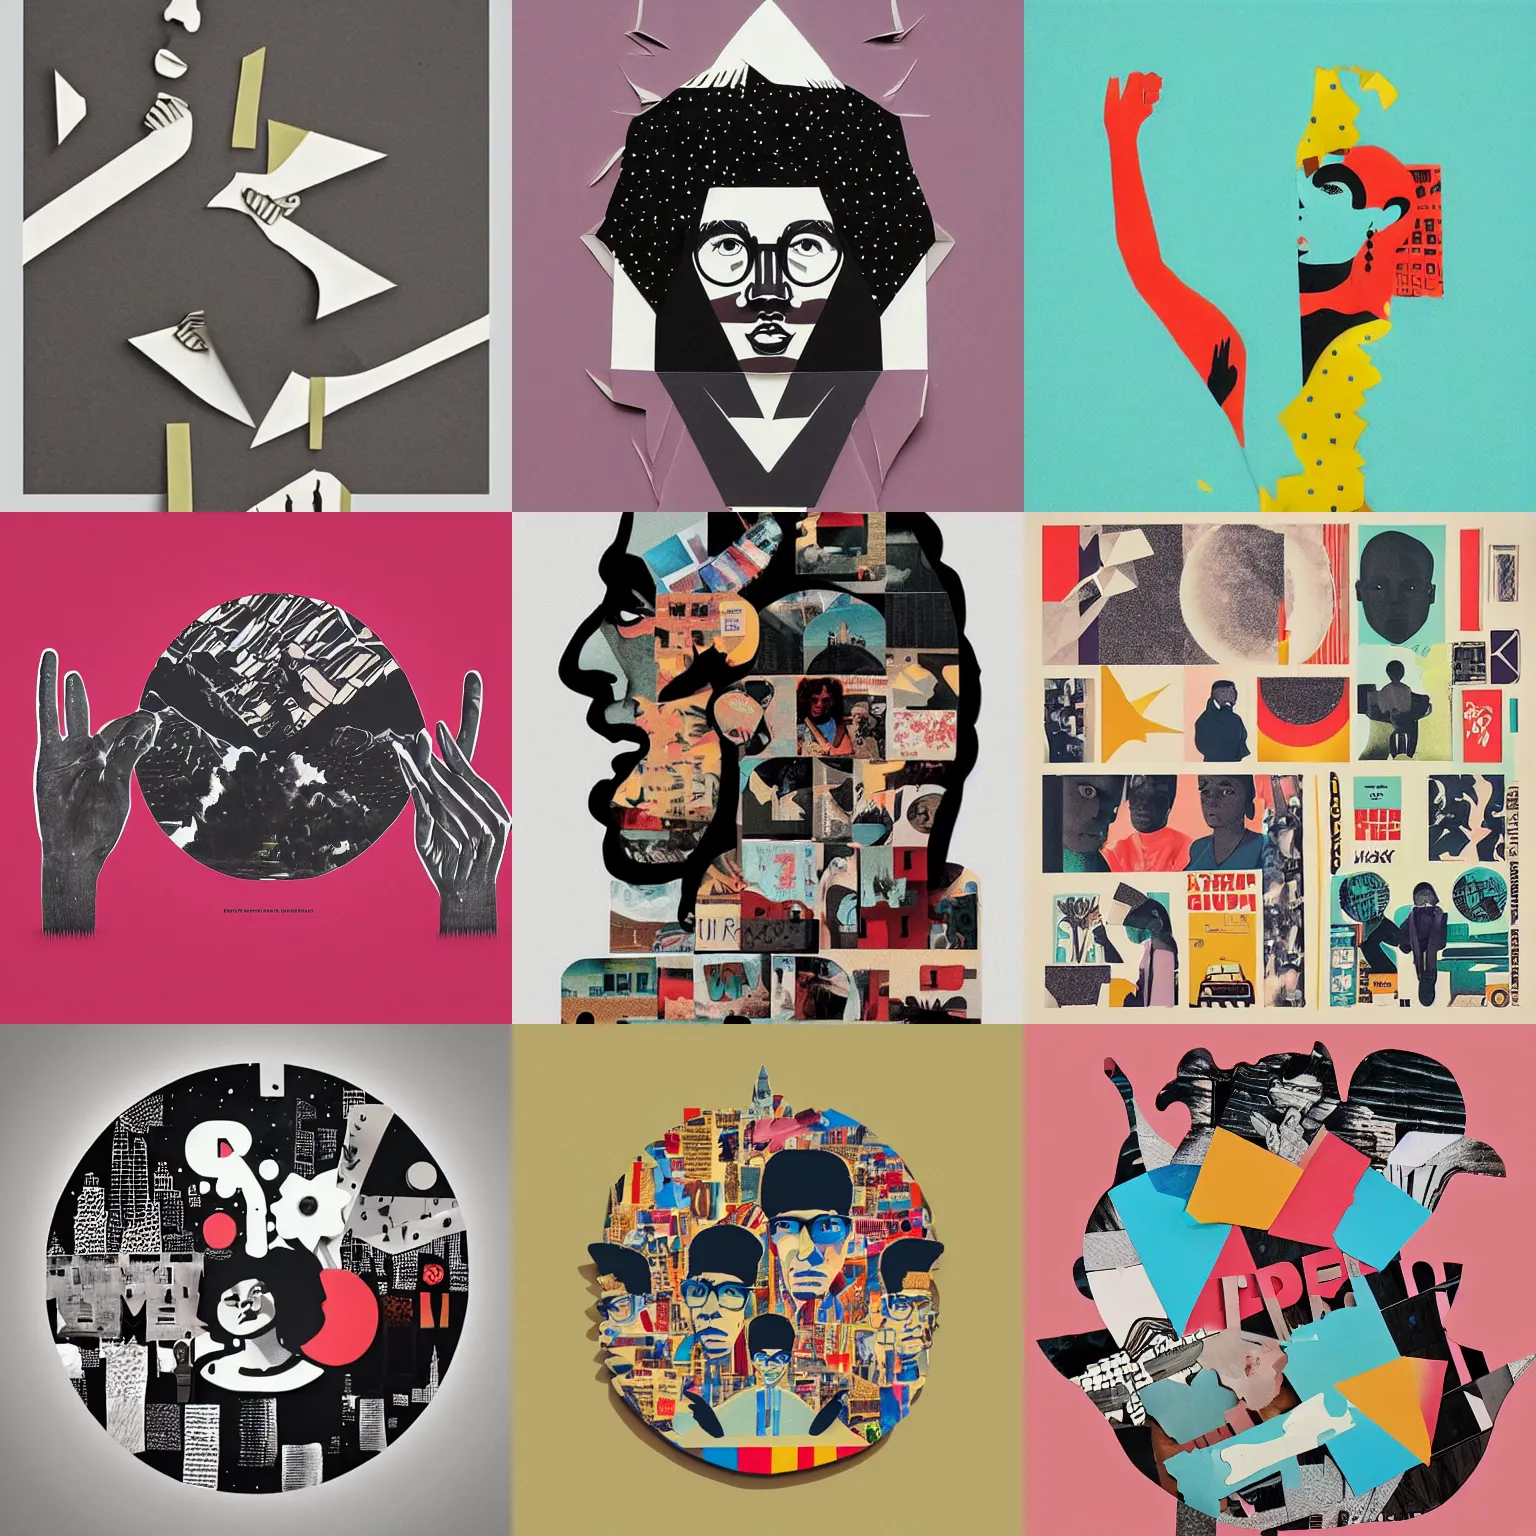 Prompt: paper cut out collage artwork, artsy, lofi hip hop album cover, trending on behance